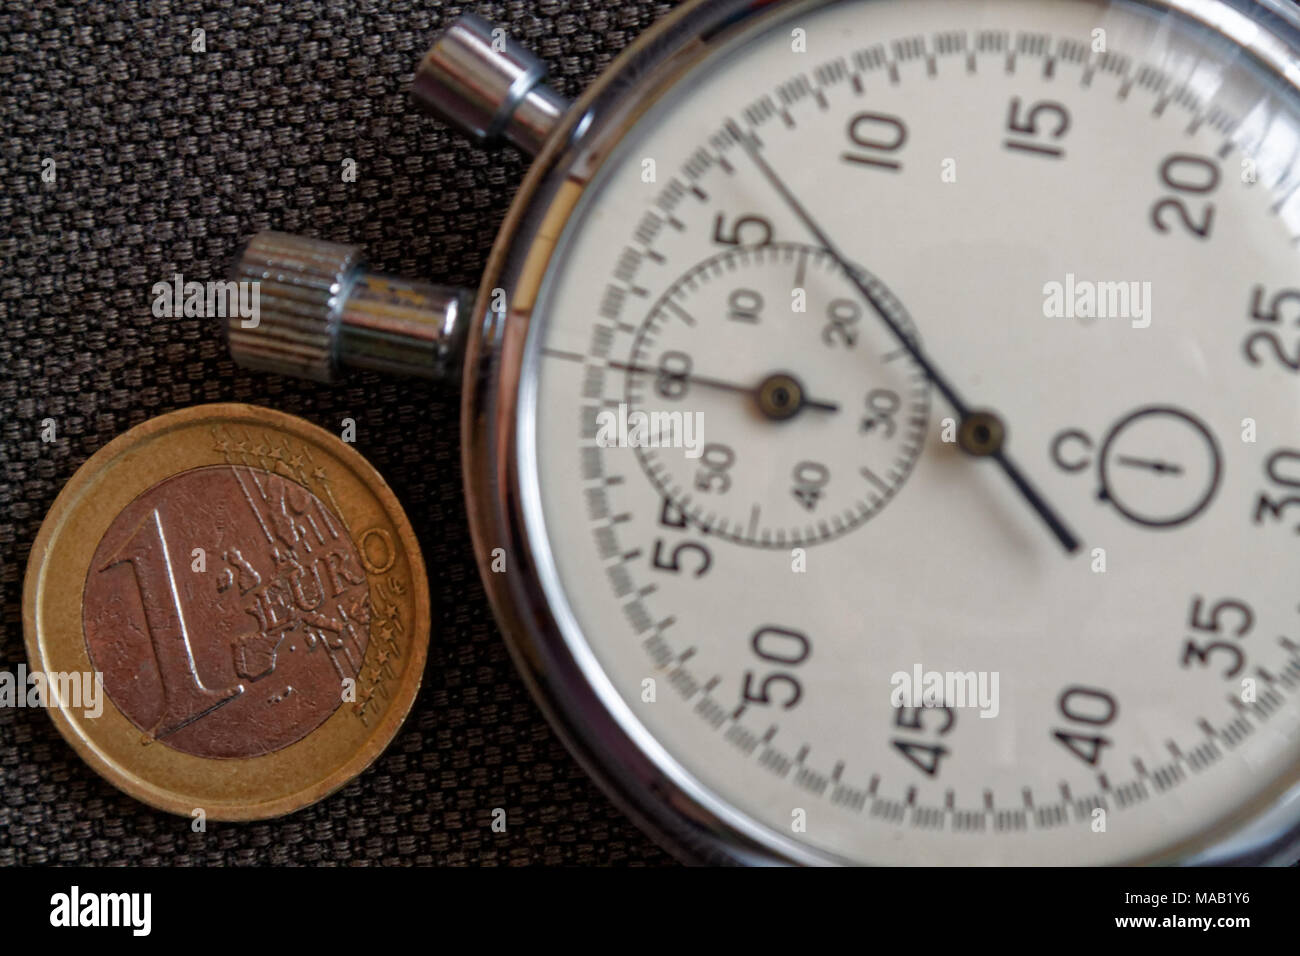 Pièce en euros avec une valeur nominale d'un euro et le chronomètre sur toile Denim marron - business background Banque D'Images